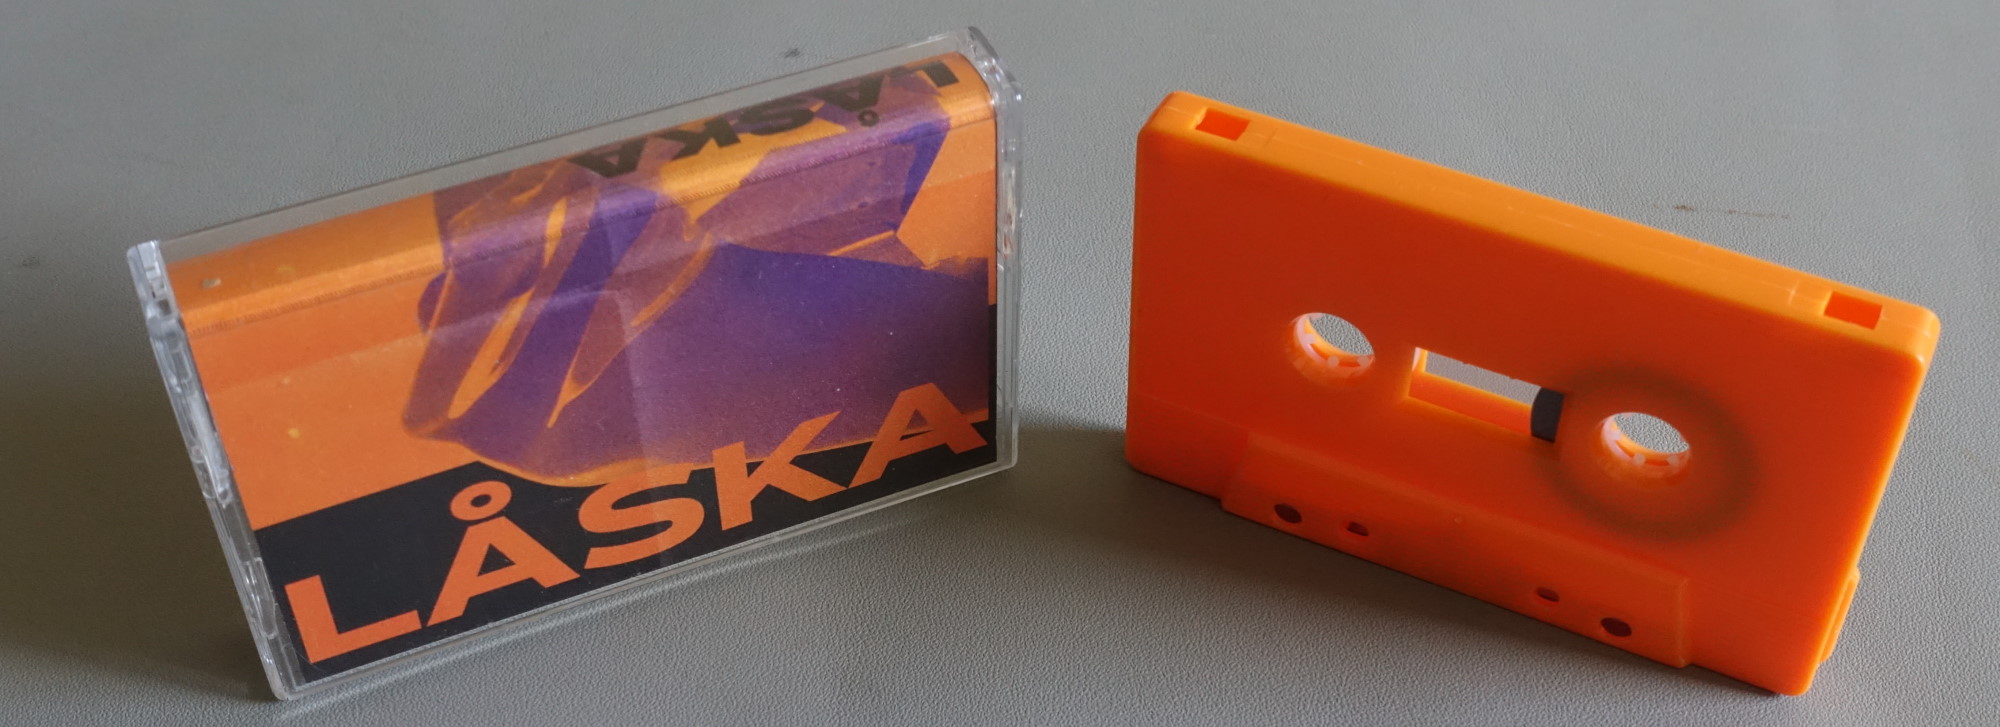 Laska cassette